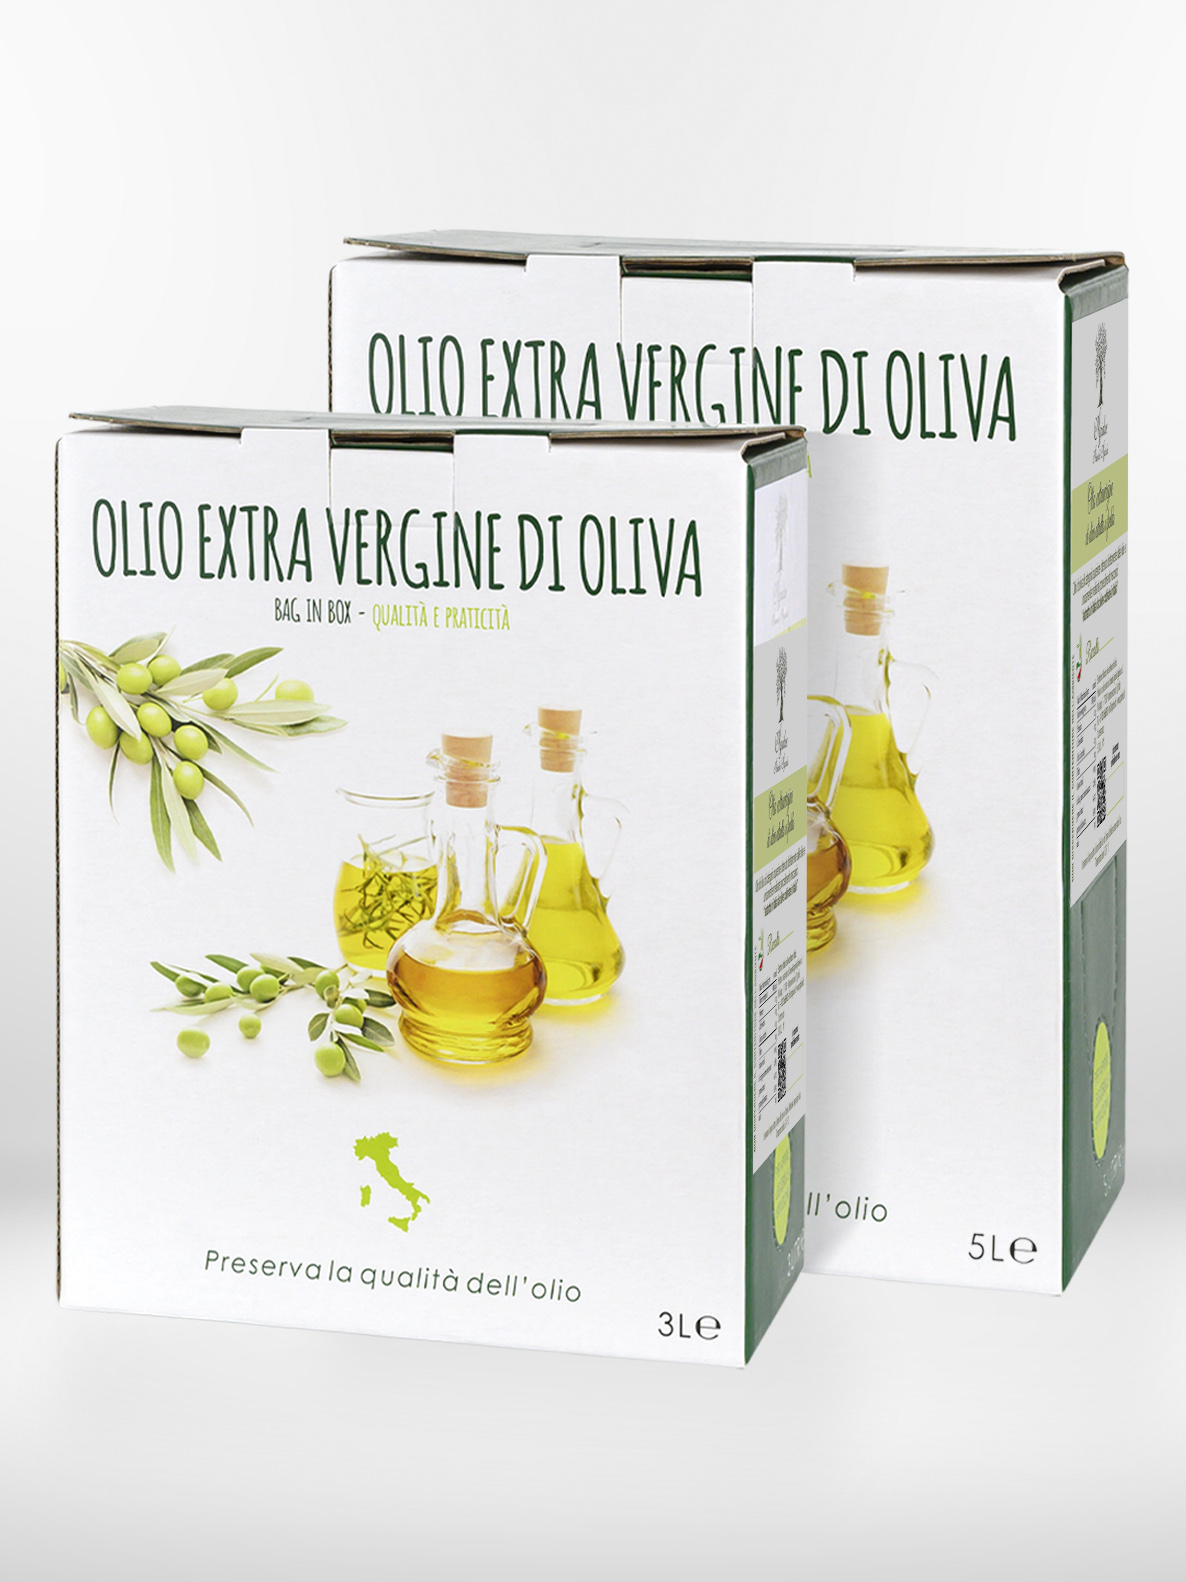 Confezione di olio d'oliva, formato bag in box da 5 litri e 3 litri, prodotto in Puglia, marchio Agridue.